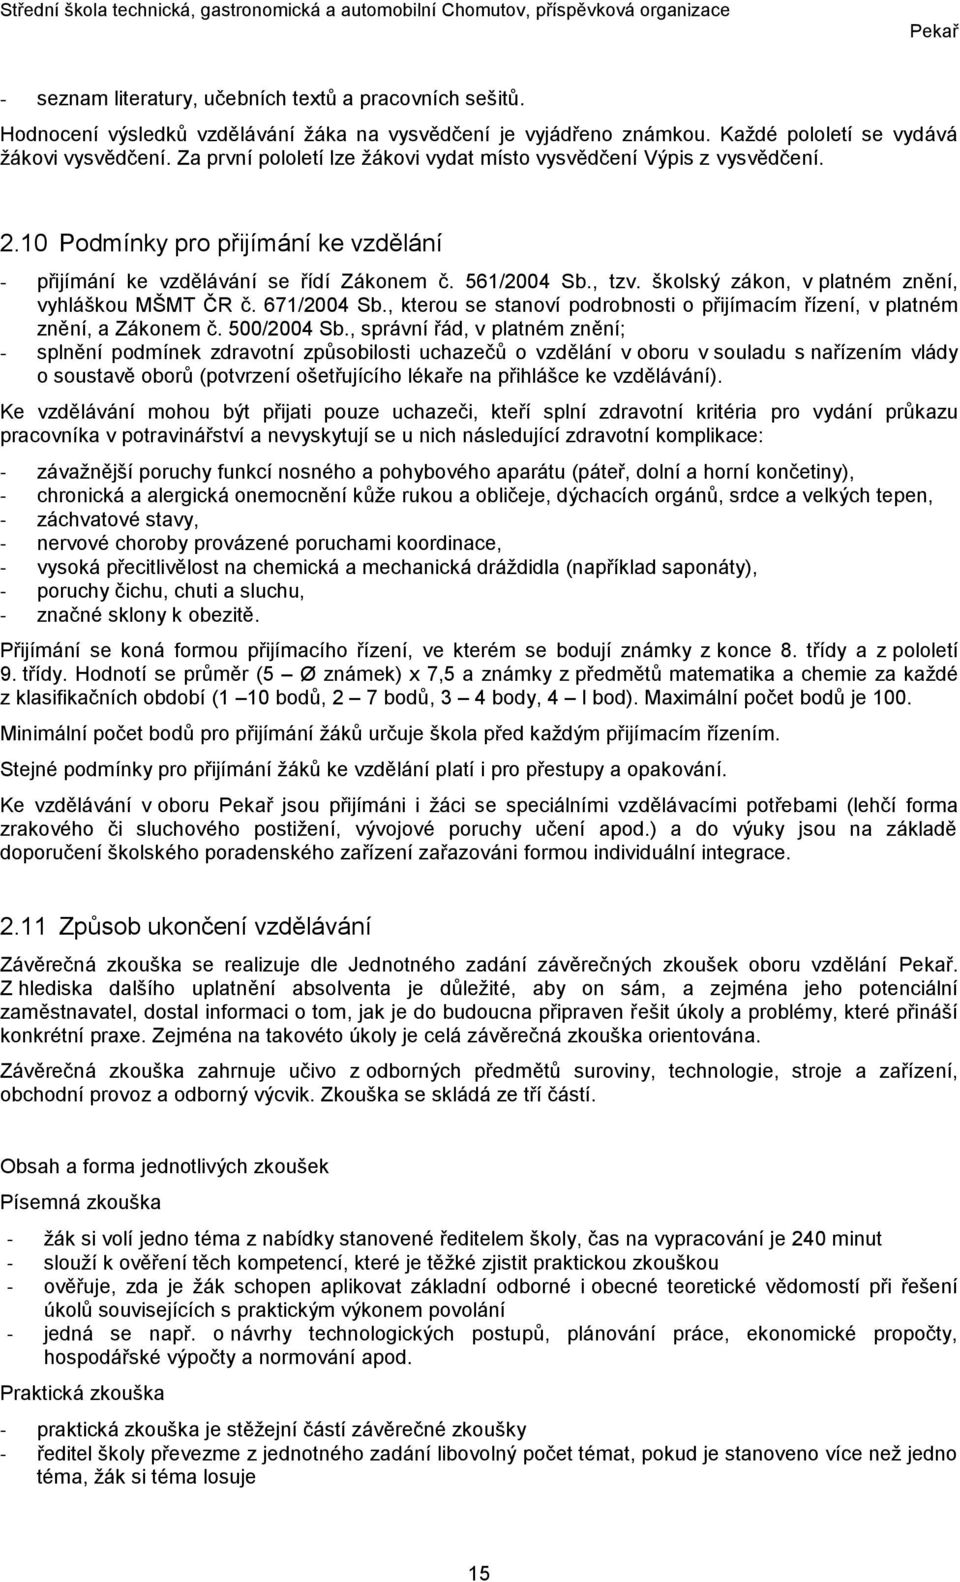 školský zákon, v platném znění, vyhláškou MŠMT ČR č. 671/2004 Sb., kterou se stanoví podrobnosti o přijímacím řízení, v platném znění, a Zákonem č. 500/2004 Sb.